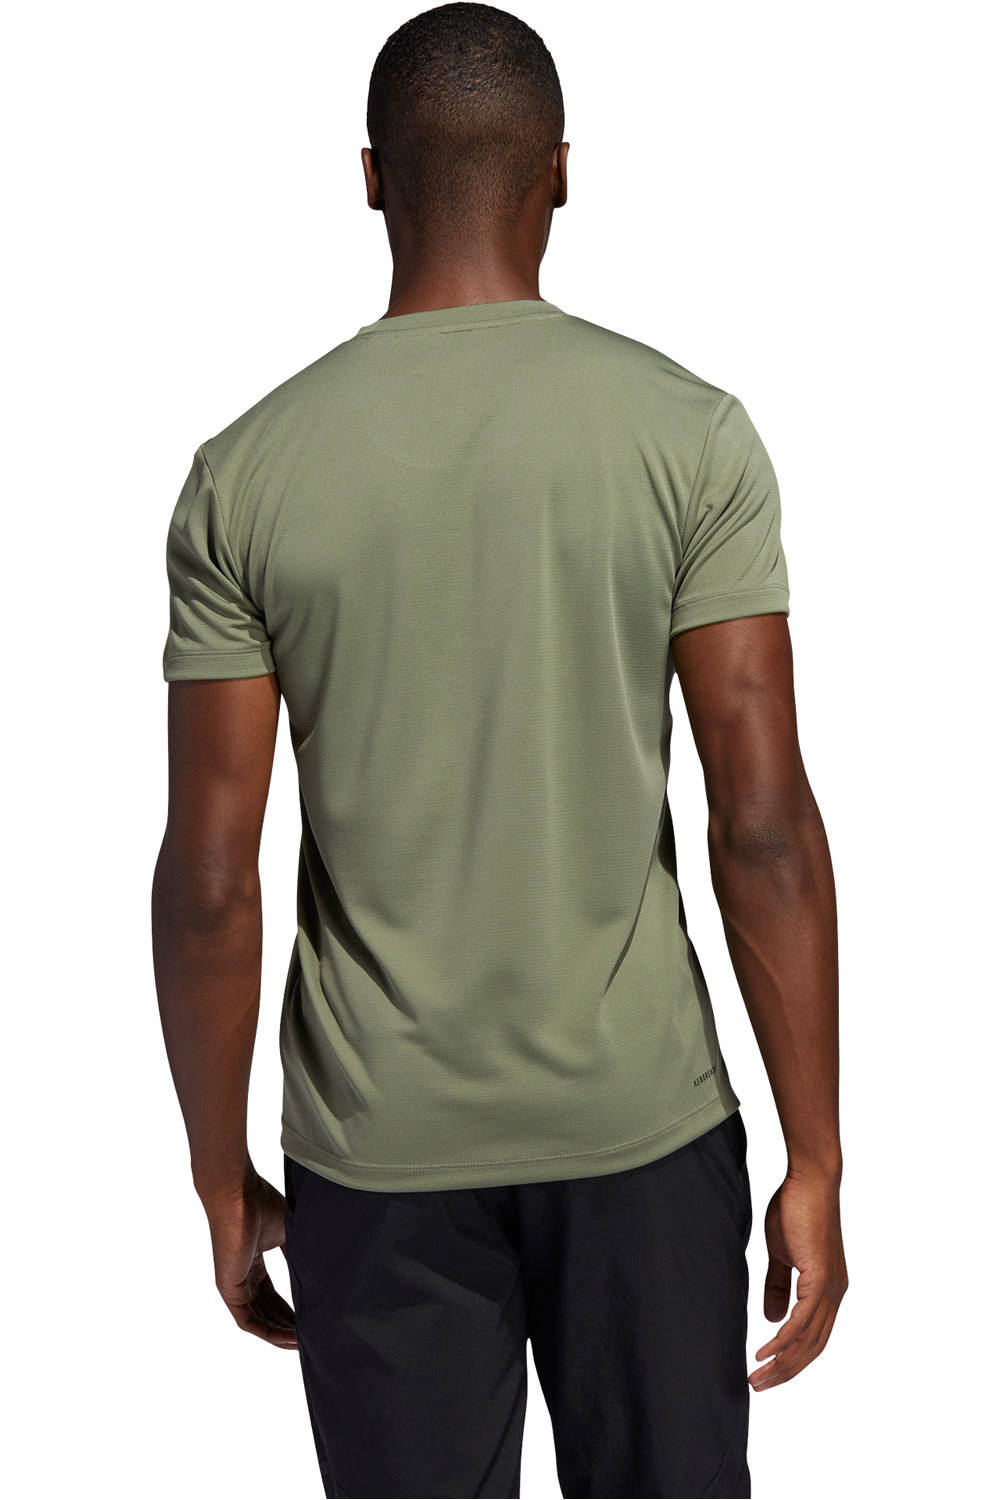 adidas camiseta fitness hombre AERO 3S TEE vista trasera